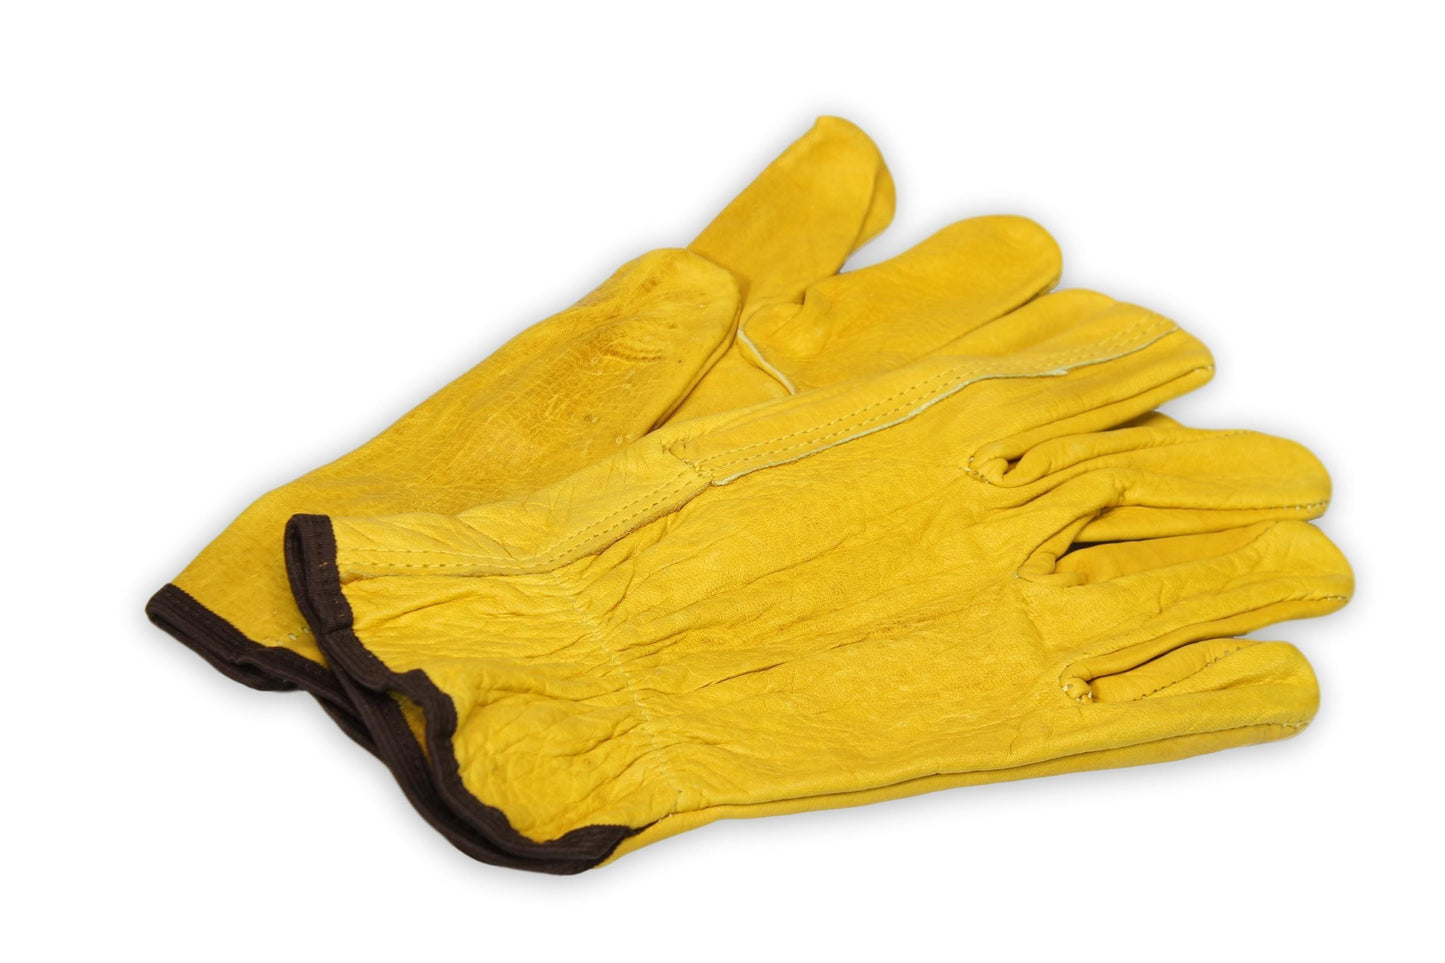 Arbor Scientific Leather Gloves